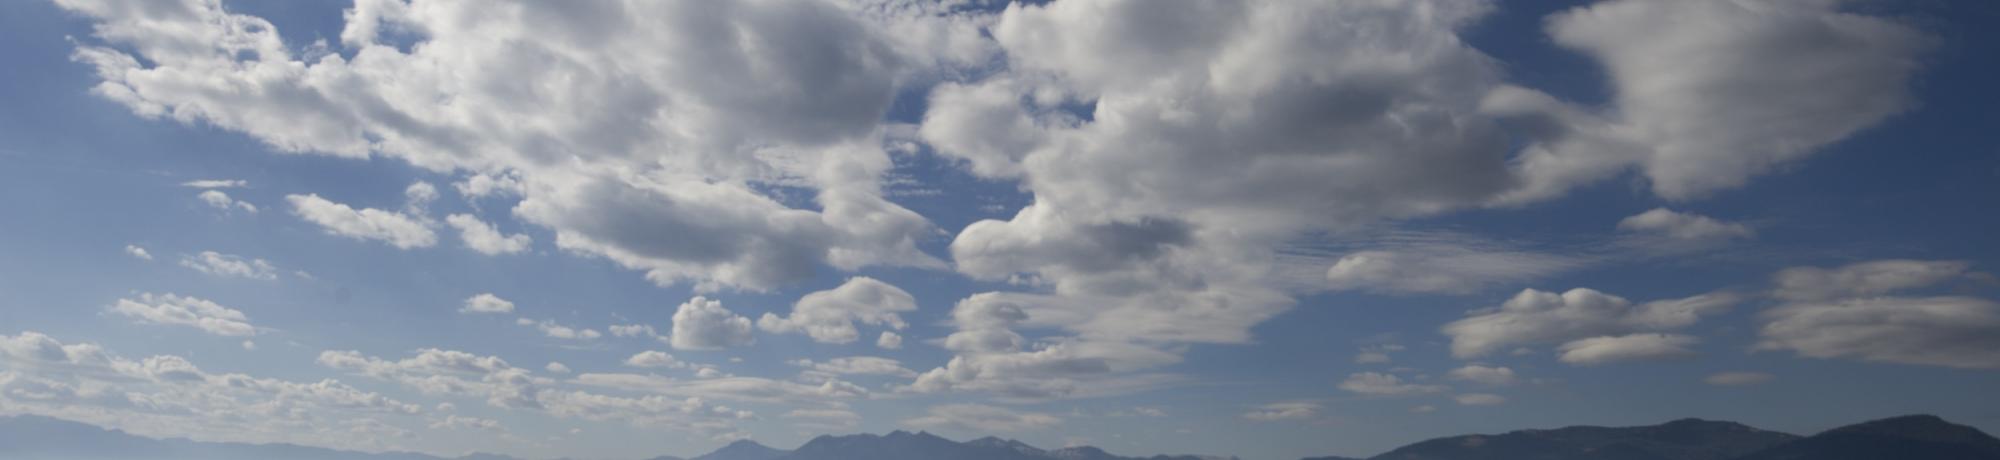 Clouds over Tahoe credit UC Davis TERC